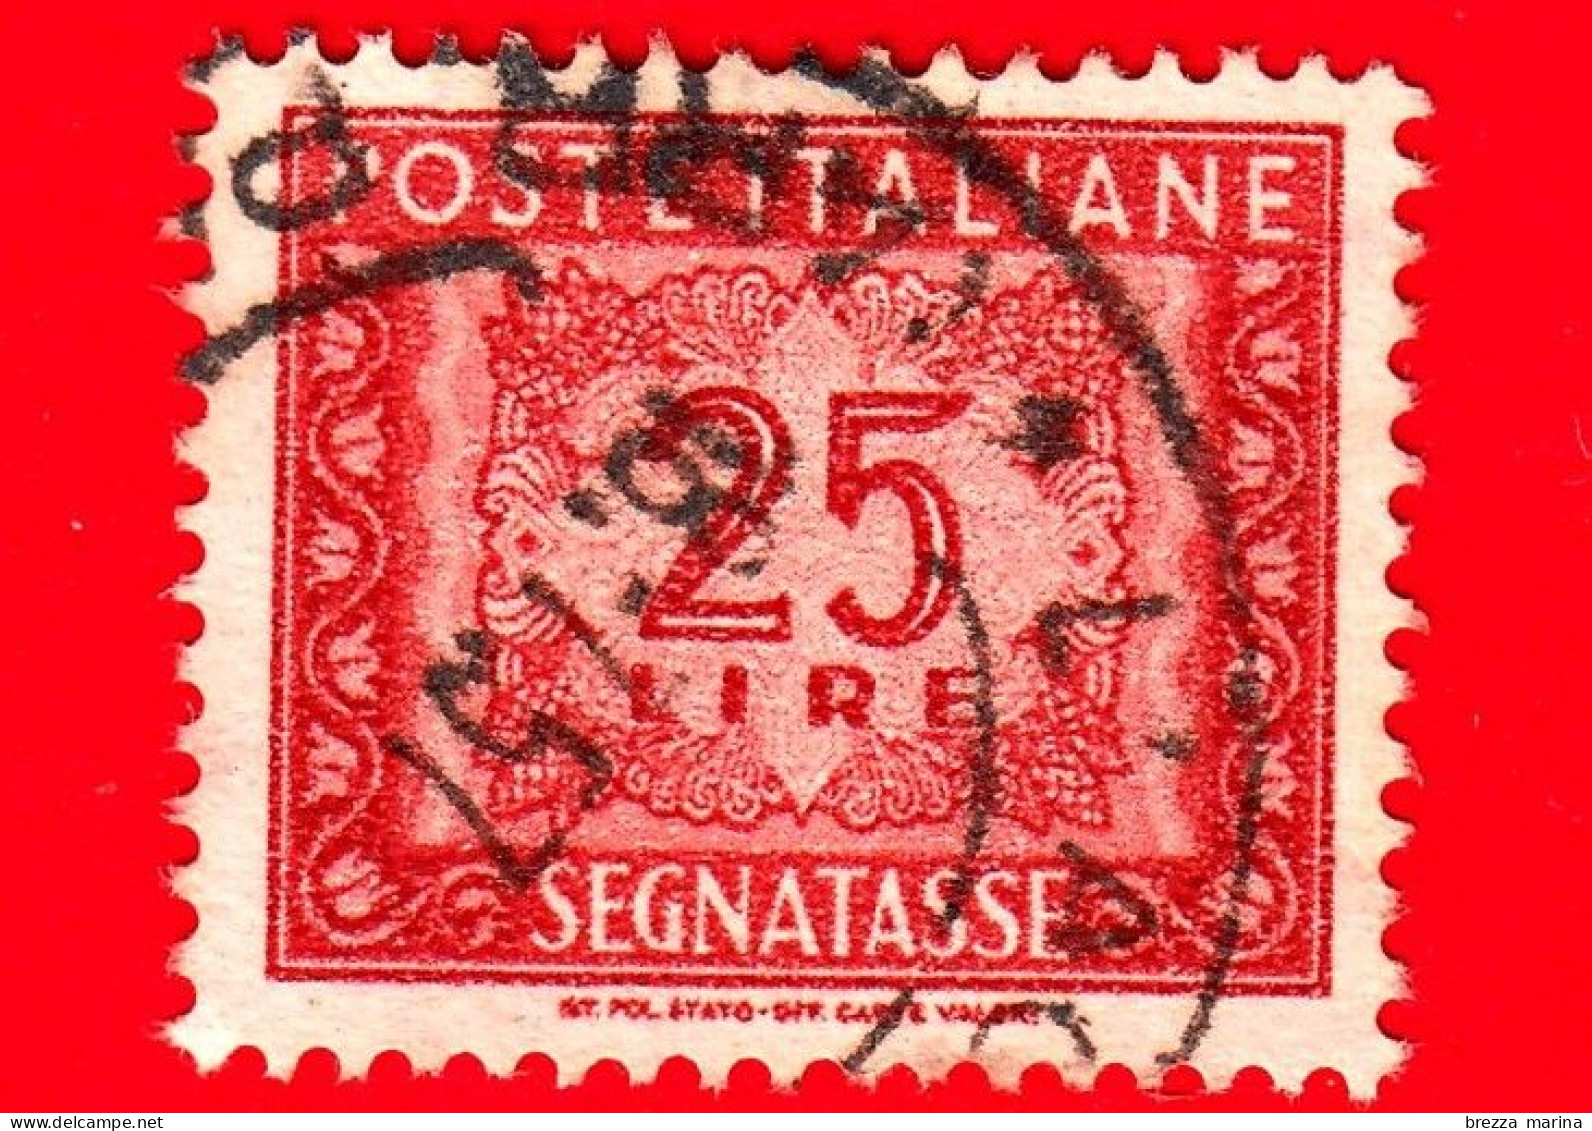 ITALIA - Usato - 1955 - Segnatasse - Cifra E Decorazioni, Filigrana Stella - 25 L. • - Postage Due